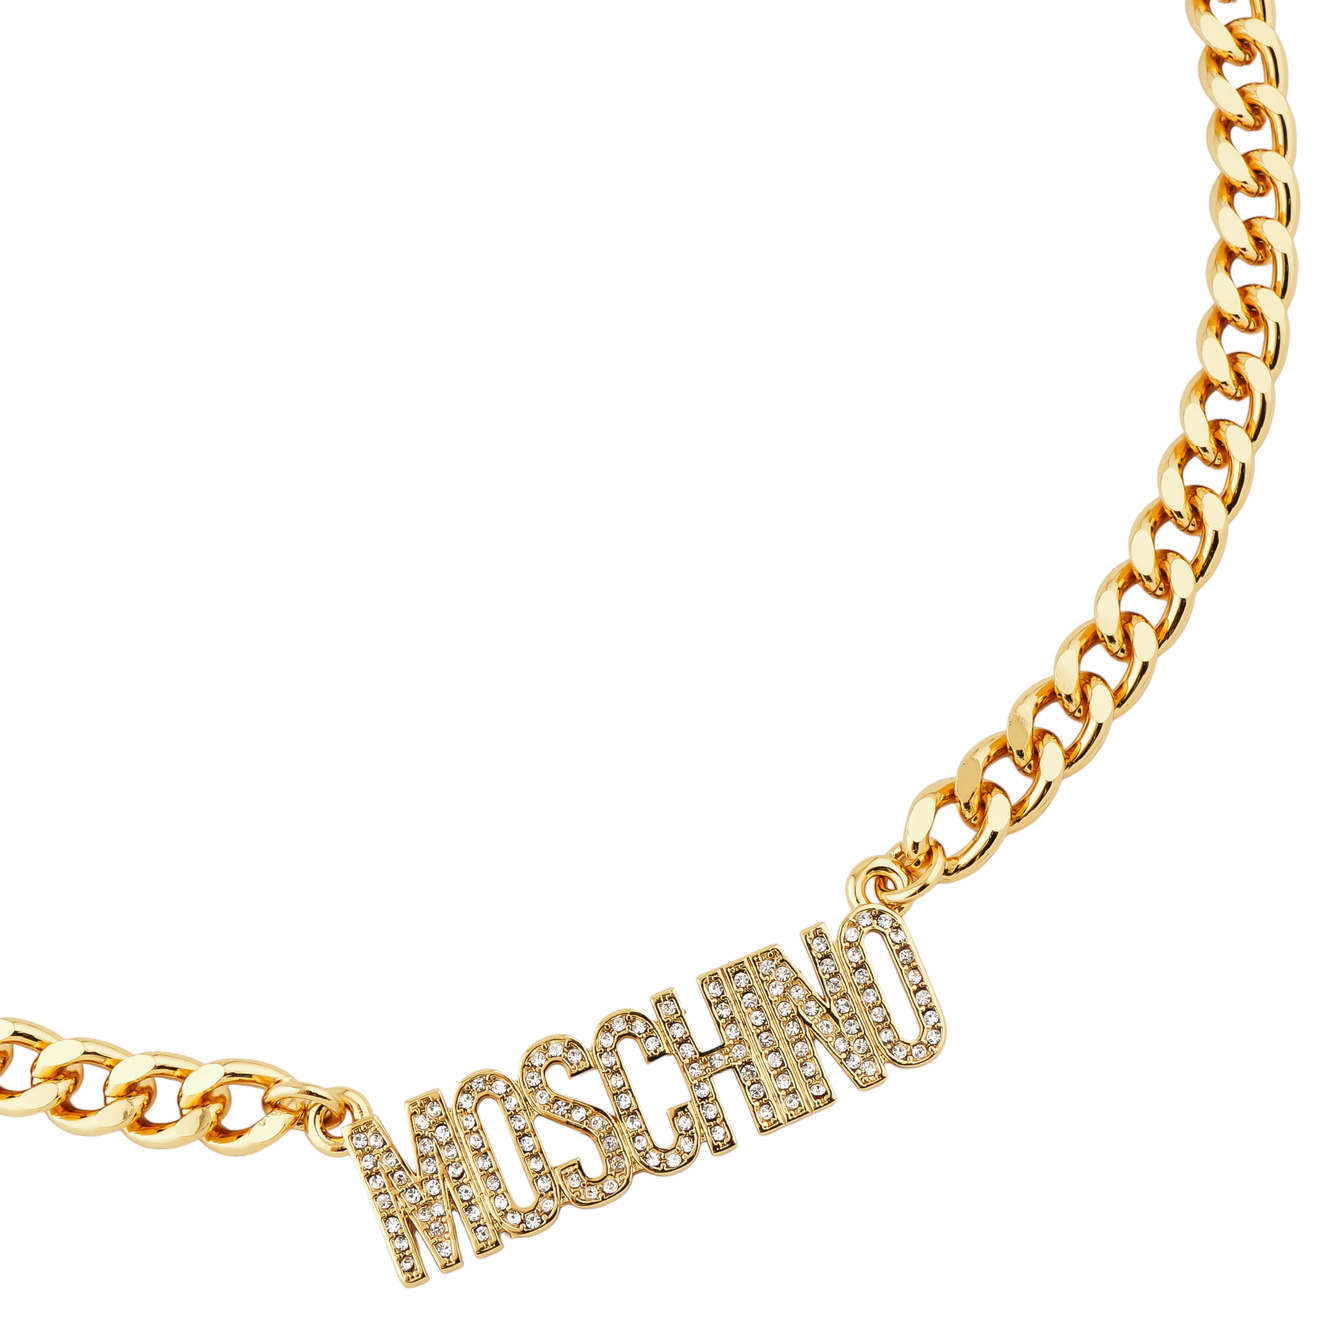 Moschino Длинное позолоченное колье-цепь с надписью бренда с кристаллами цена и фото